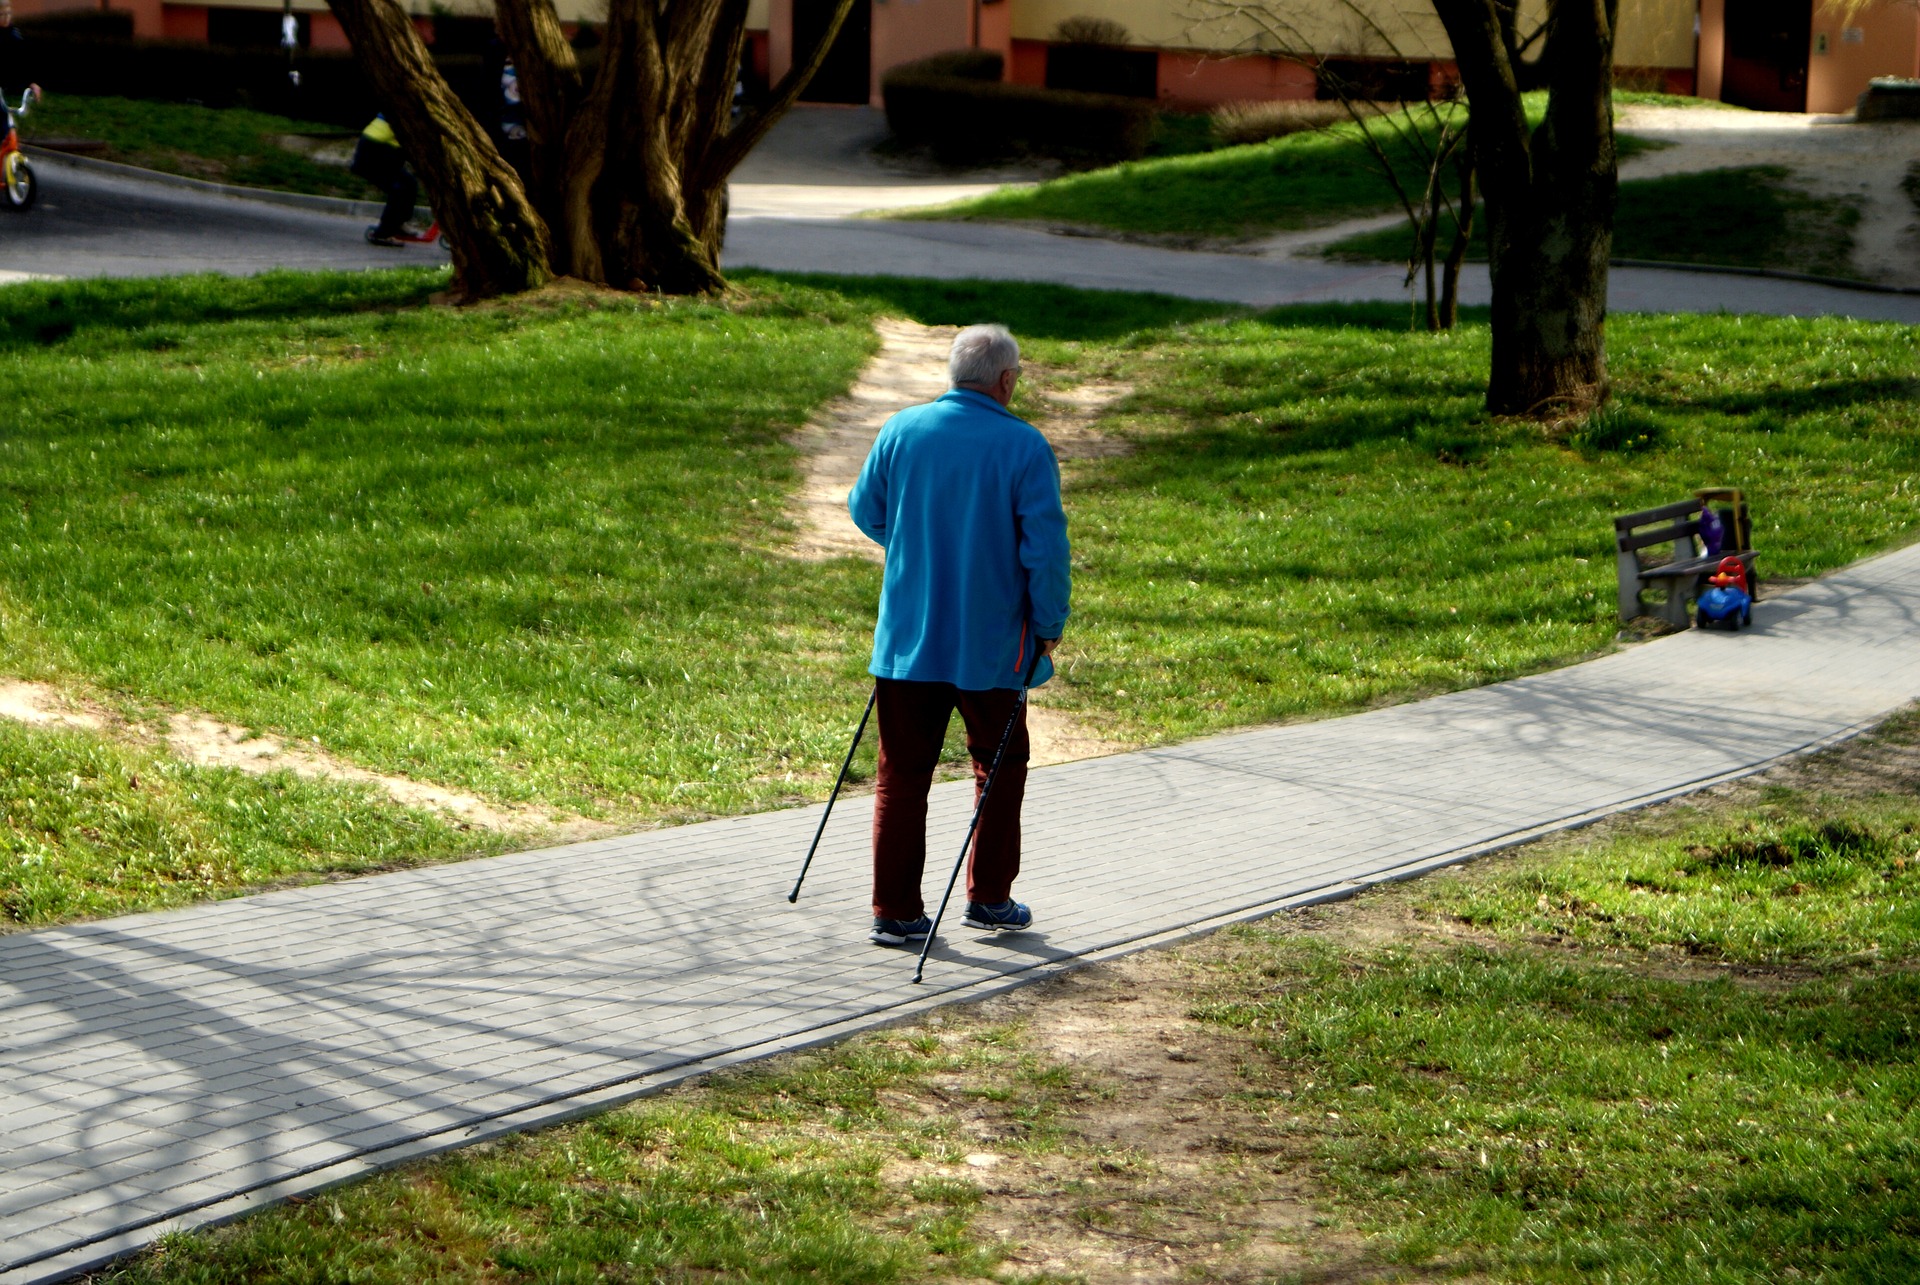 Od 1 października będzie obowiązywał niższy wiek emerytalny: 60 lat dla kobiet i 65 lat dla mężczyzn (fot.pixabay)